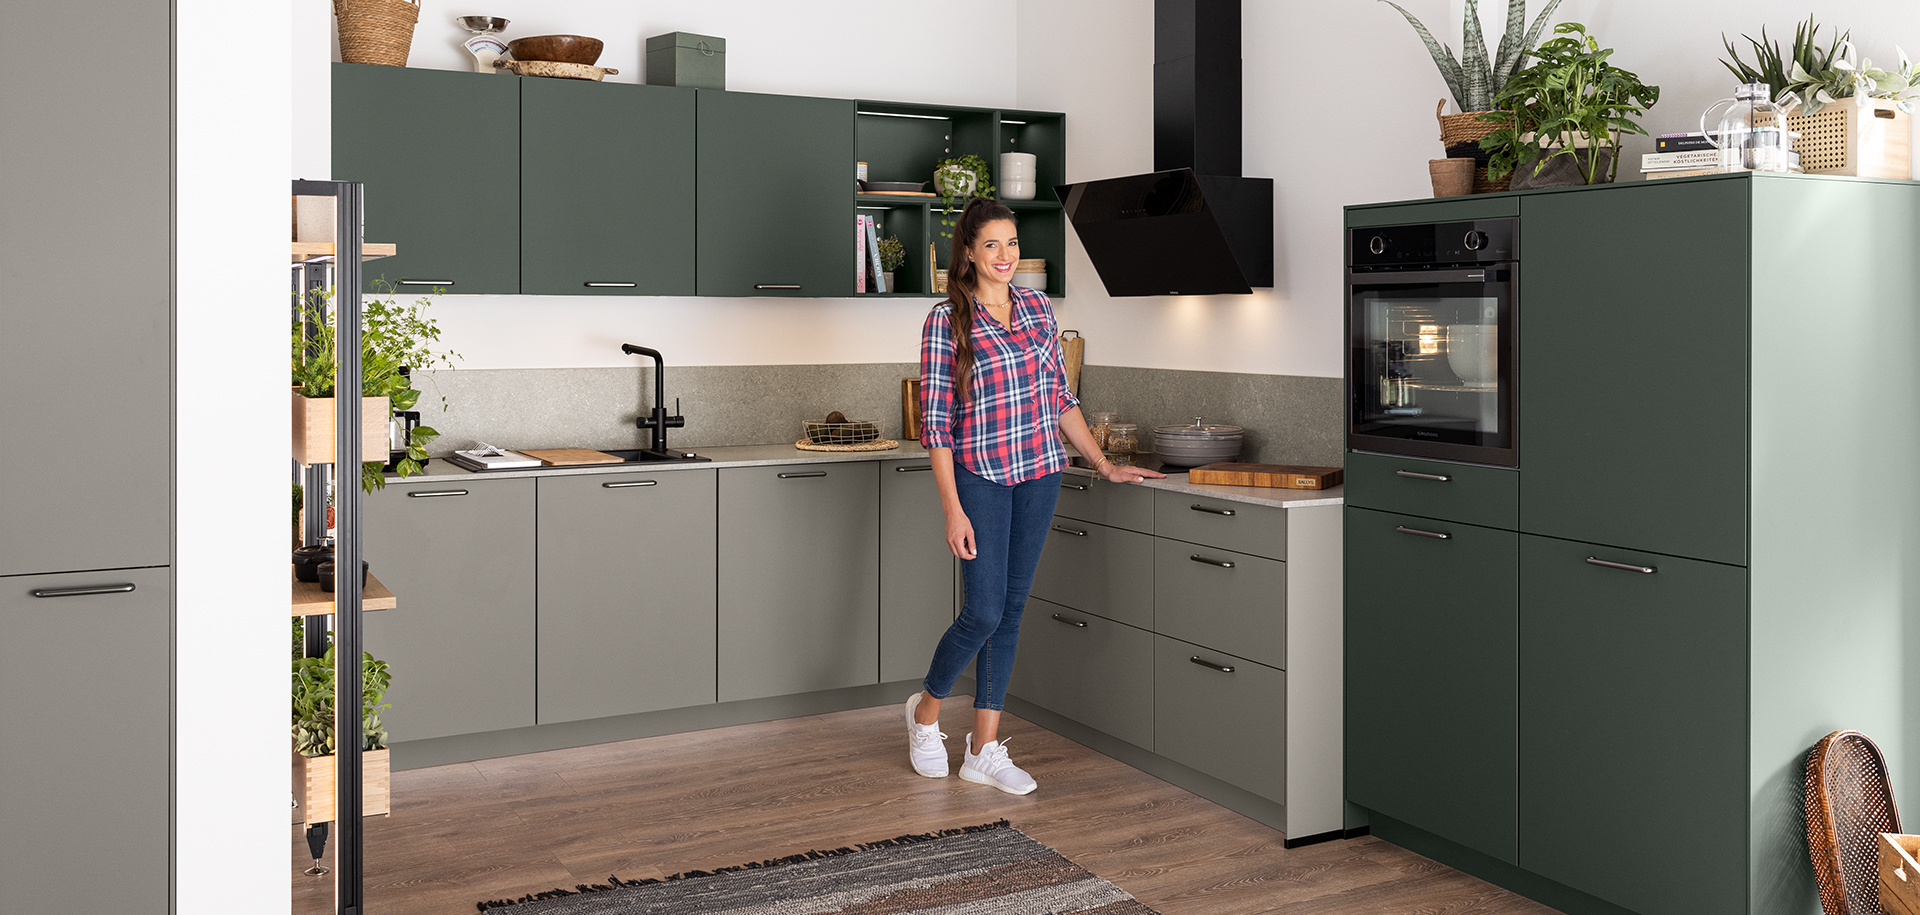 Mujer de pie en una cocina moderna con gabinetes verdes, electrodomésticos de acero inoxidable y acentos de madera, haciendo un gesto de bienvenida.